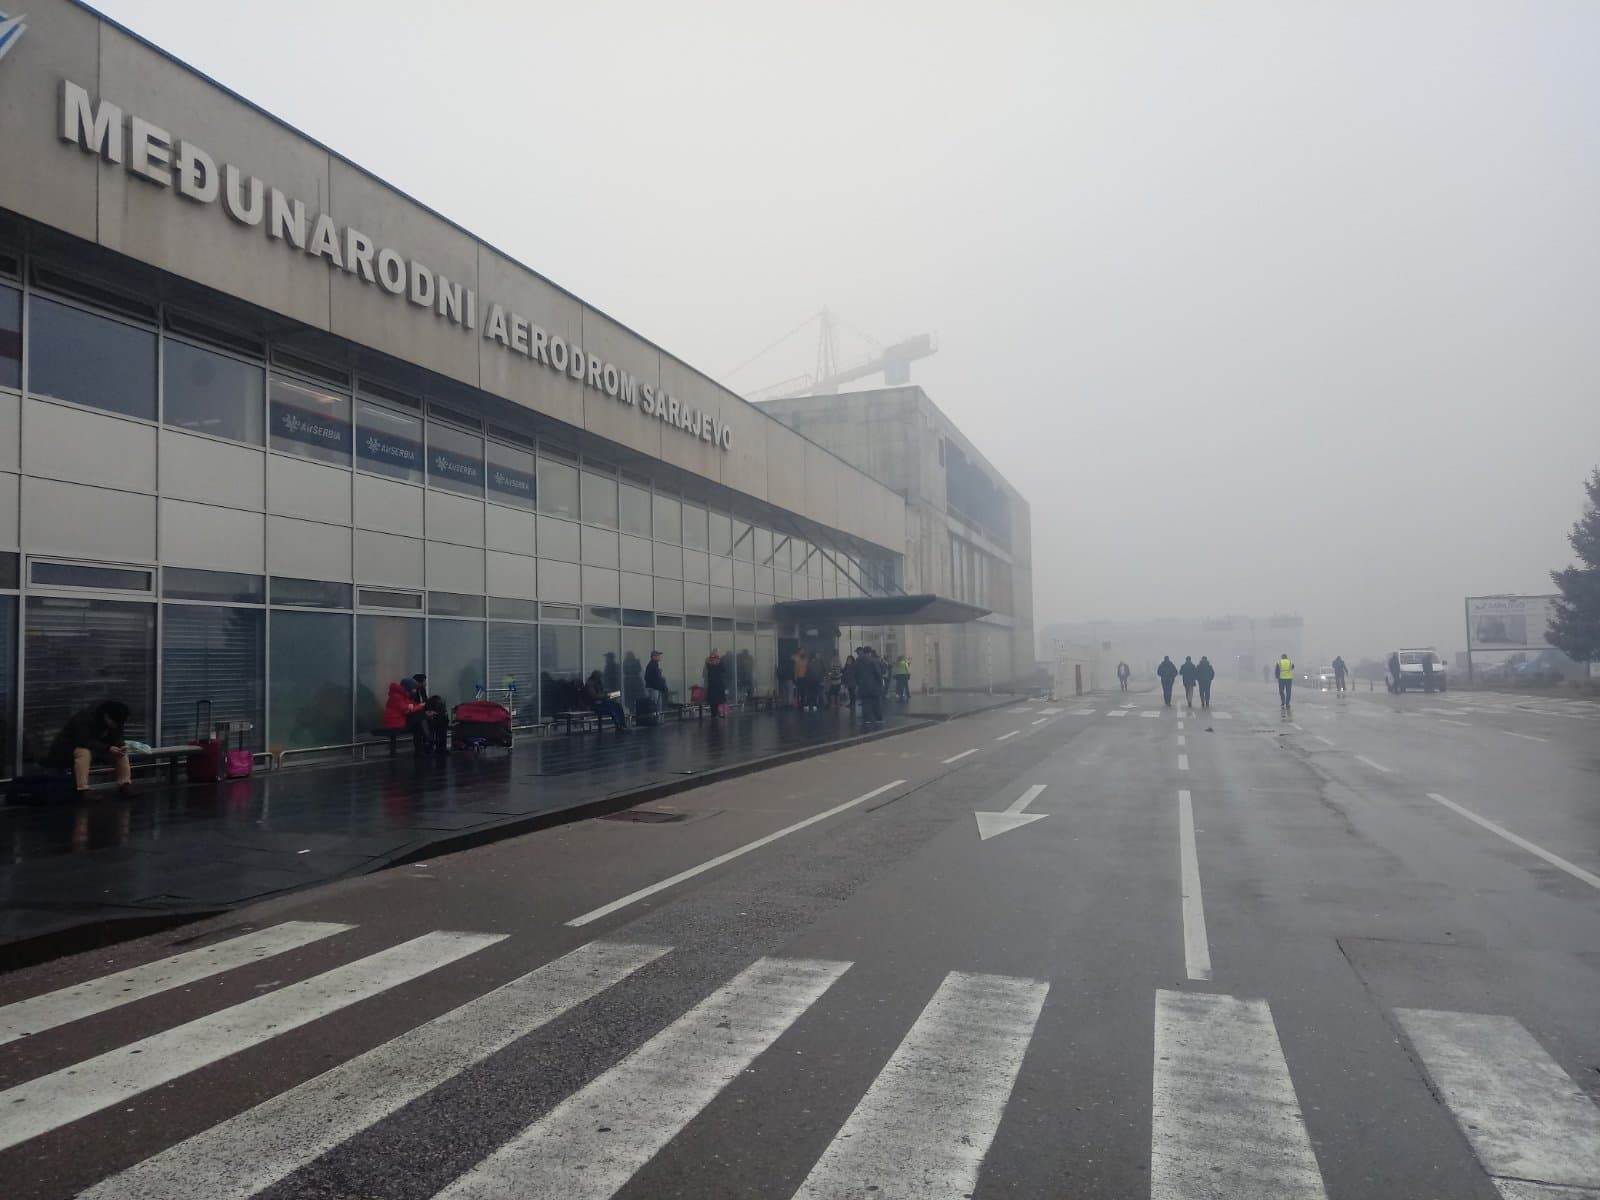  Magla prizemljila avione: Otkazani svi letovi na sarajevskom aerodromu 